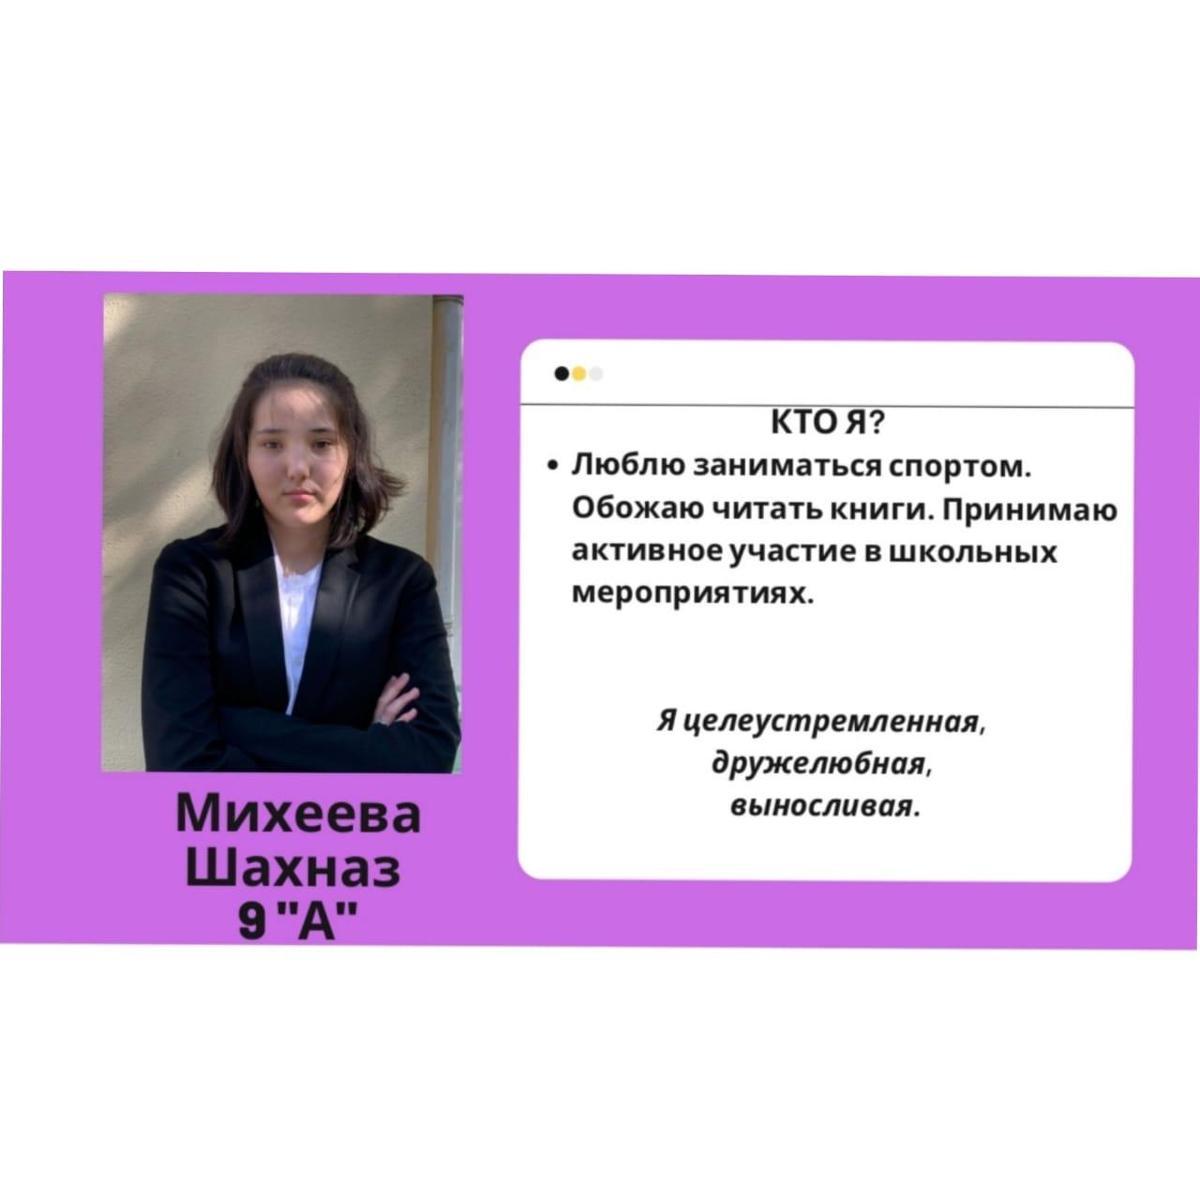 Президенты школьного самоуправления - Михеева Шахназ 9а